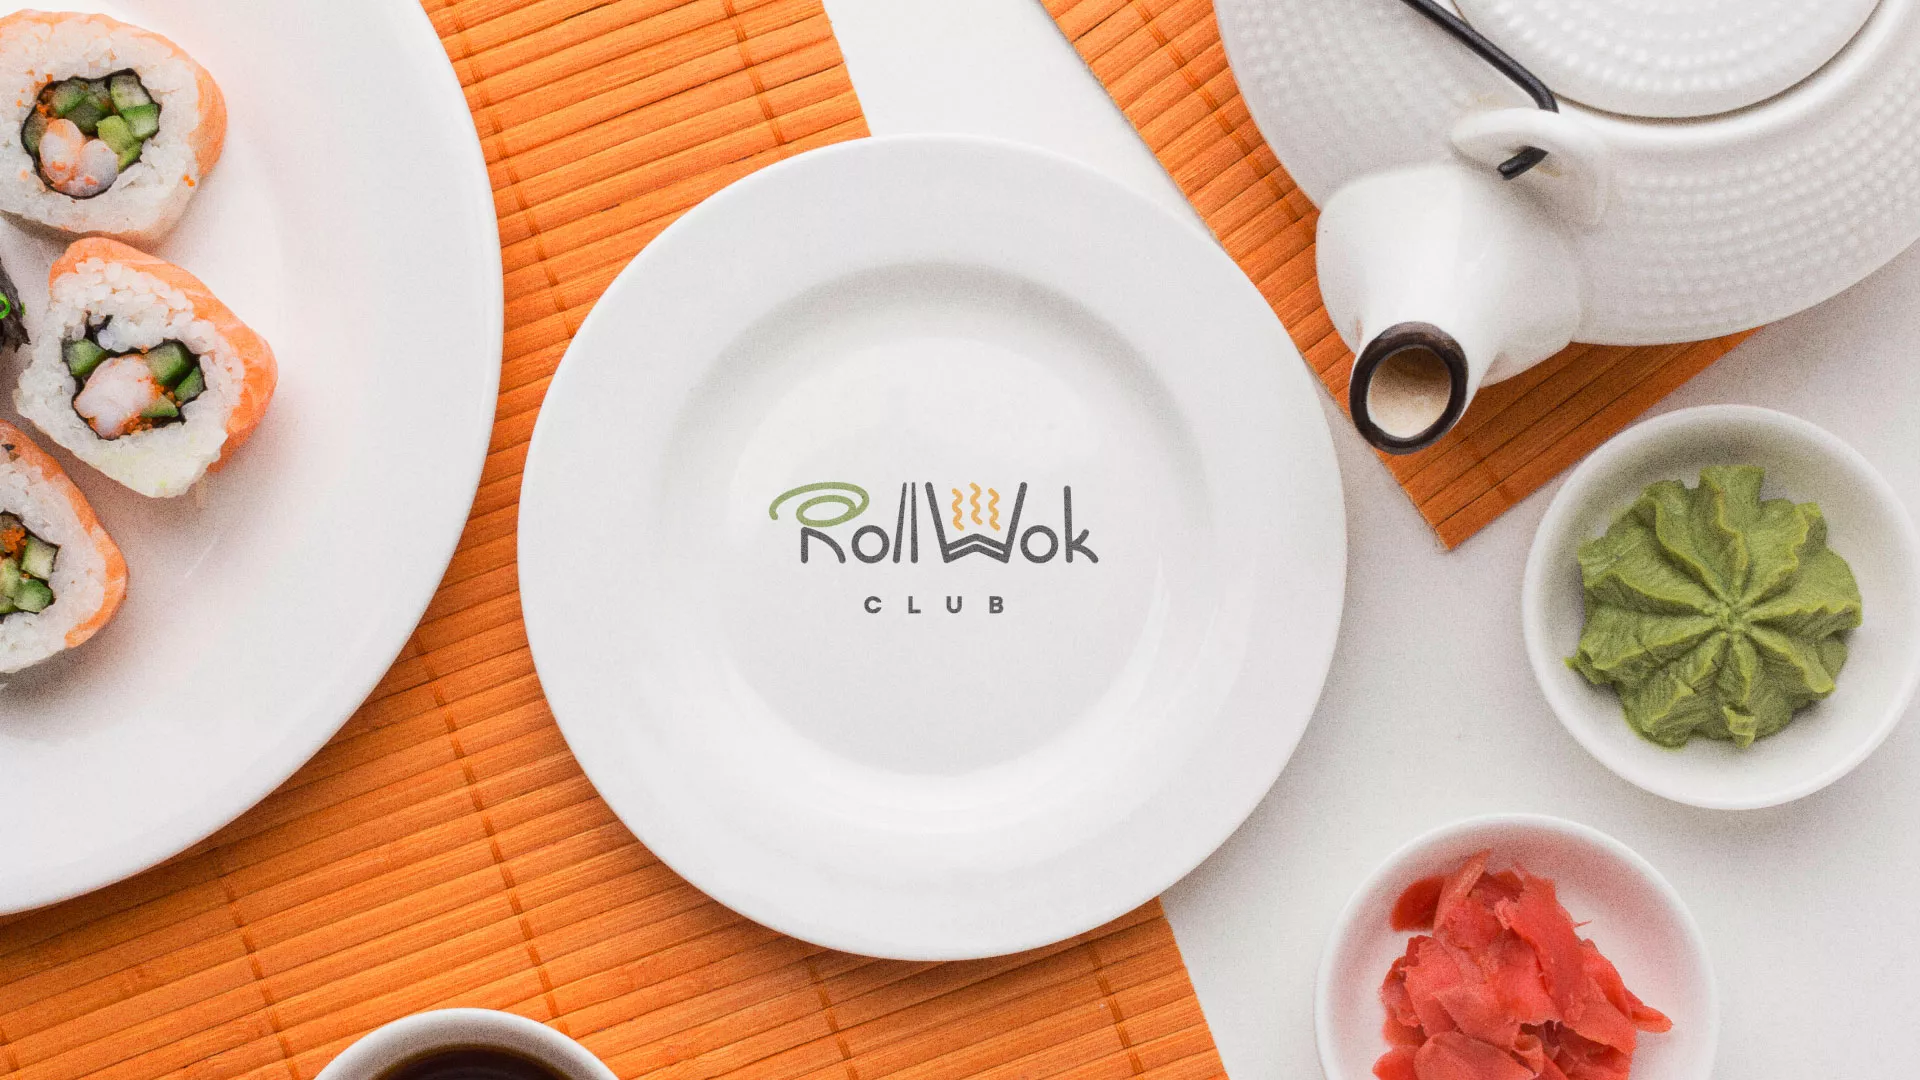 Разработка логотипа и фирменного стиля суши-бара «Roll Wok Club» в Тарусе